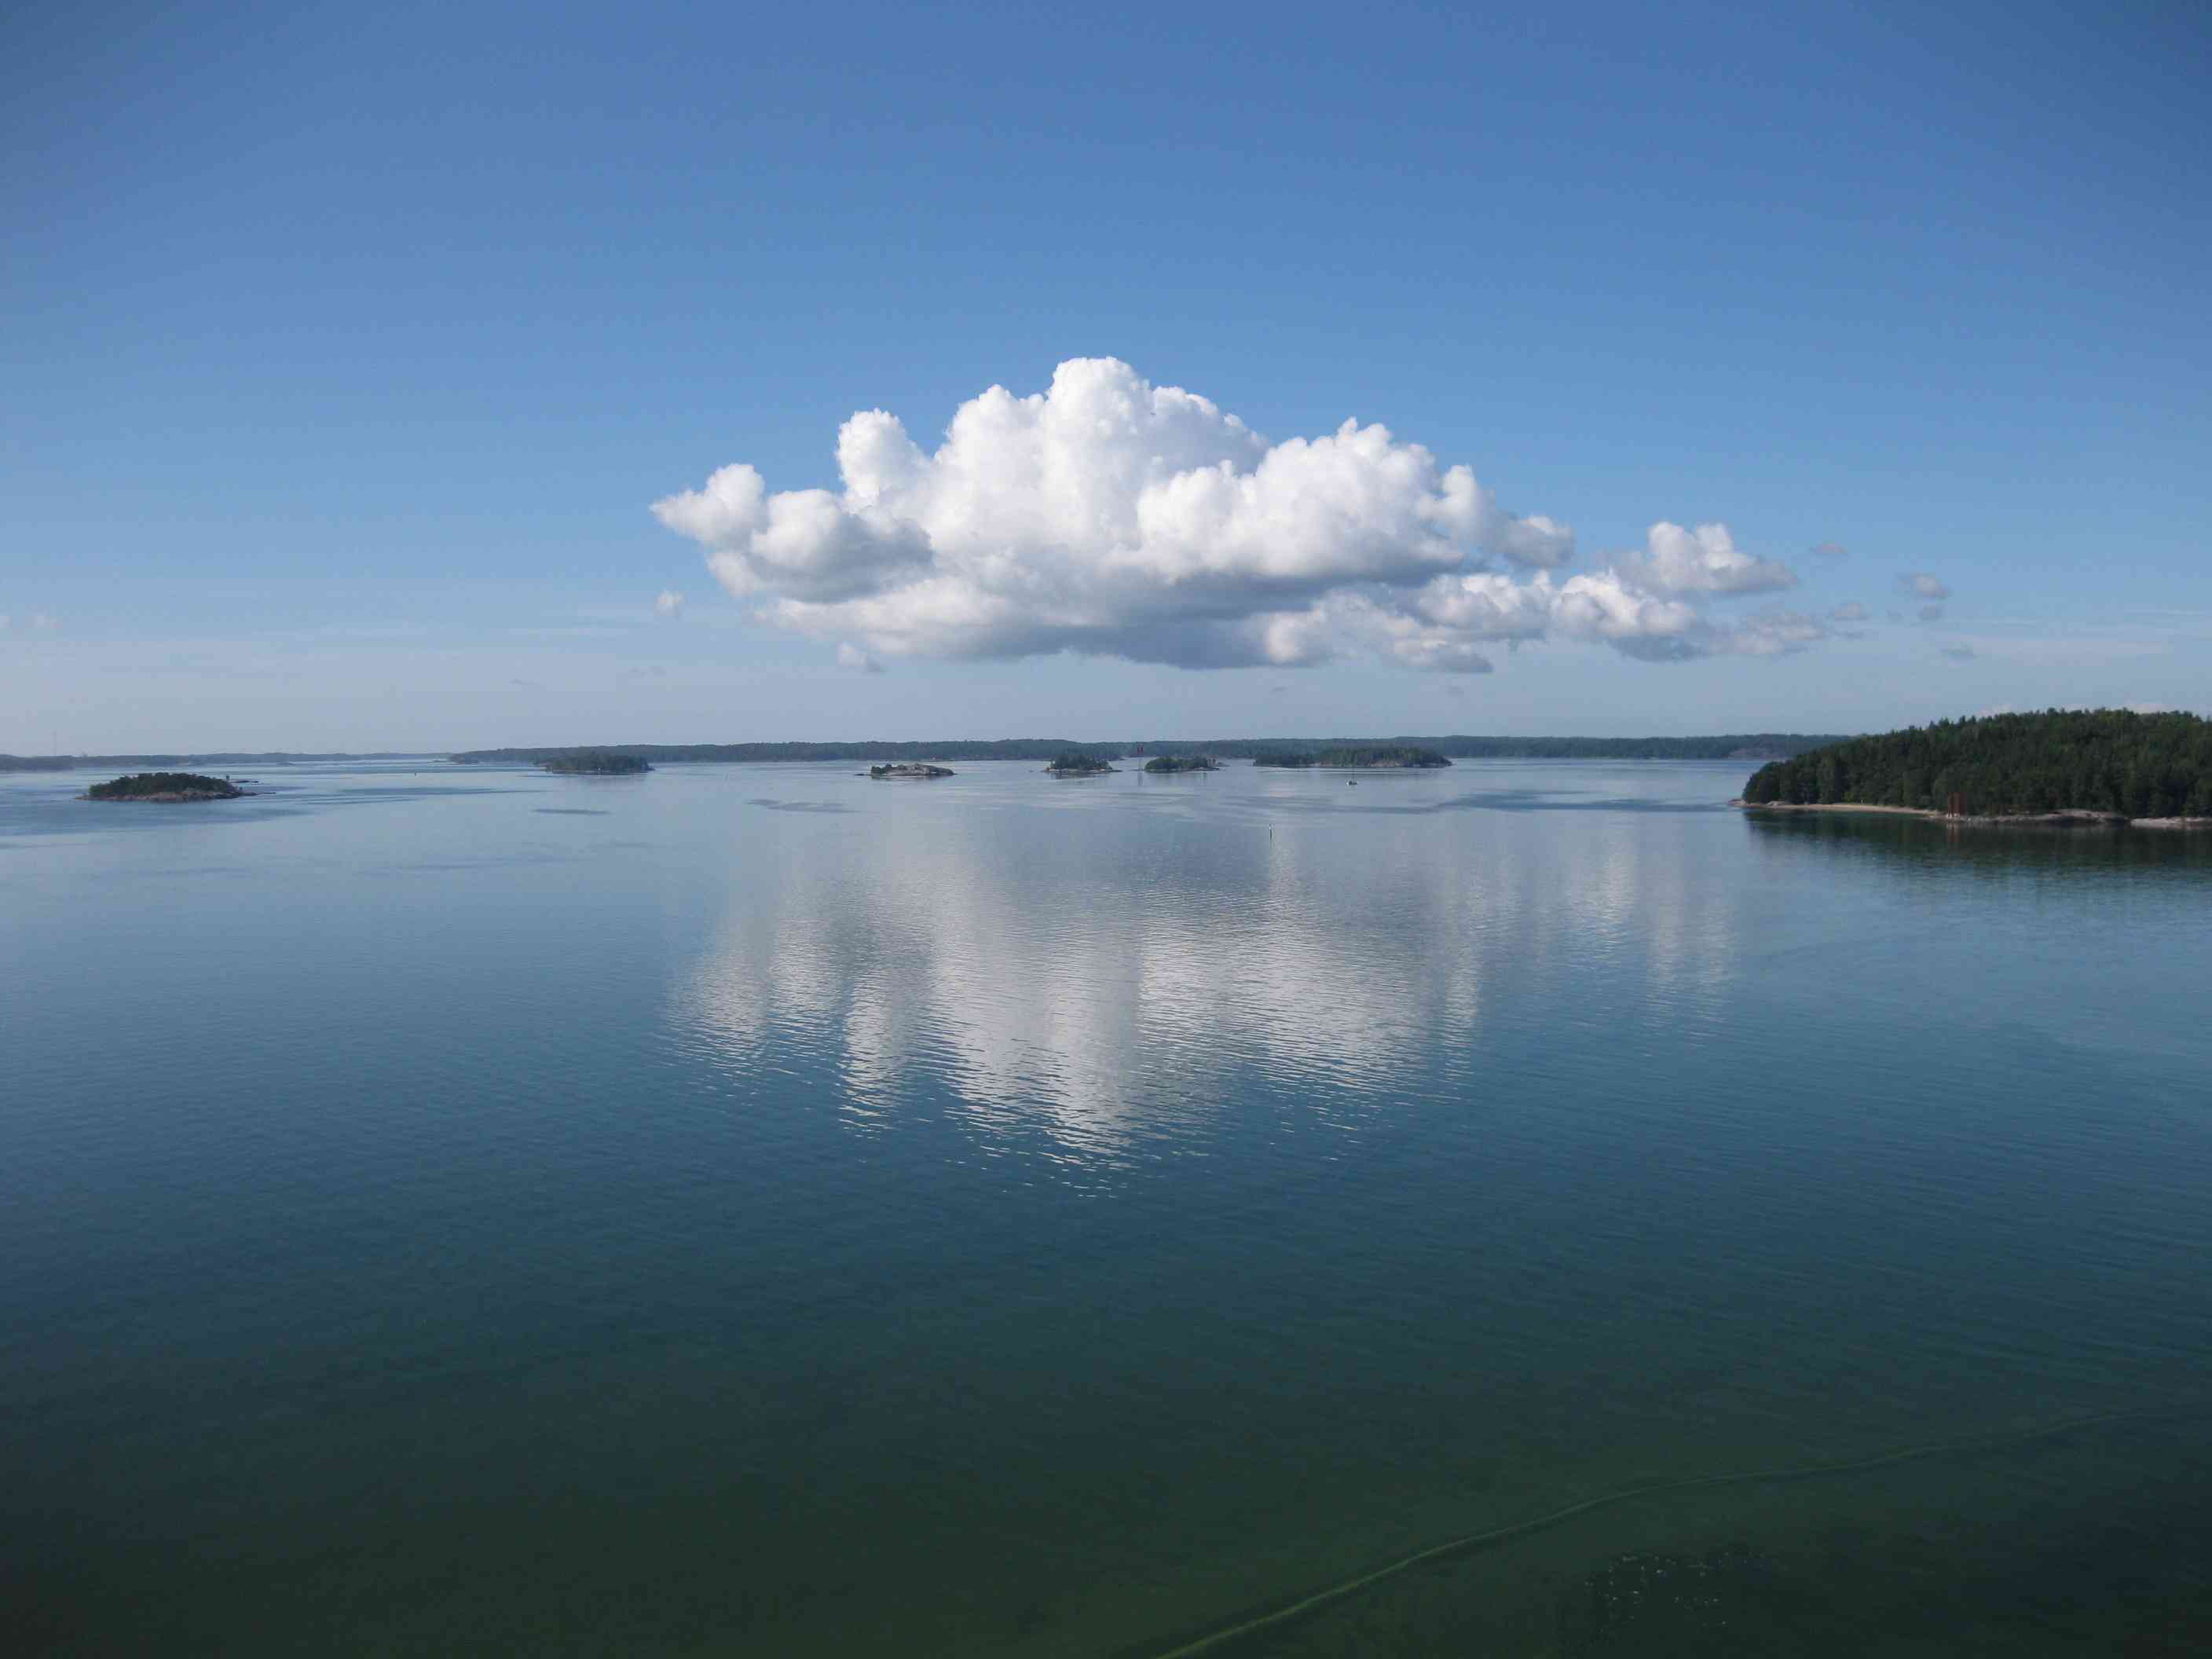 Islands near Turku, Finland